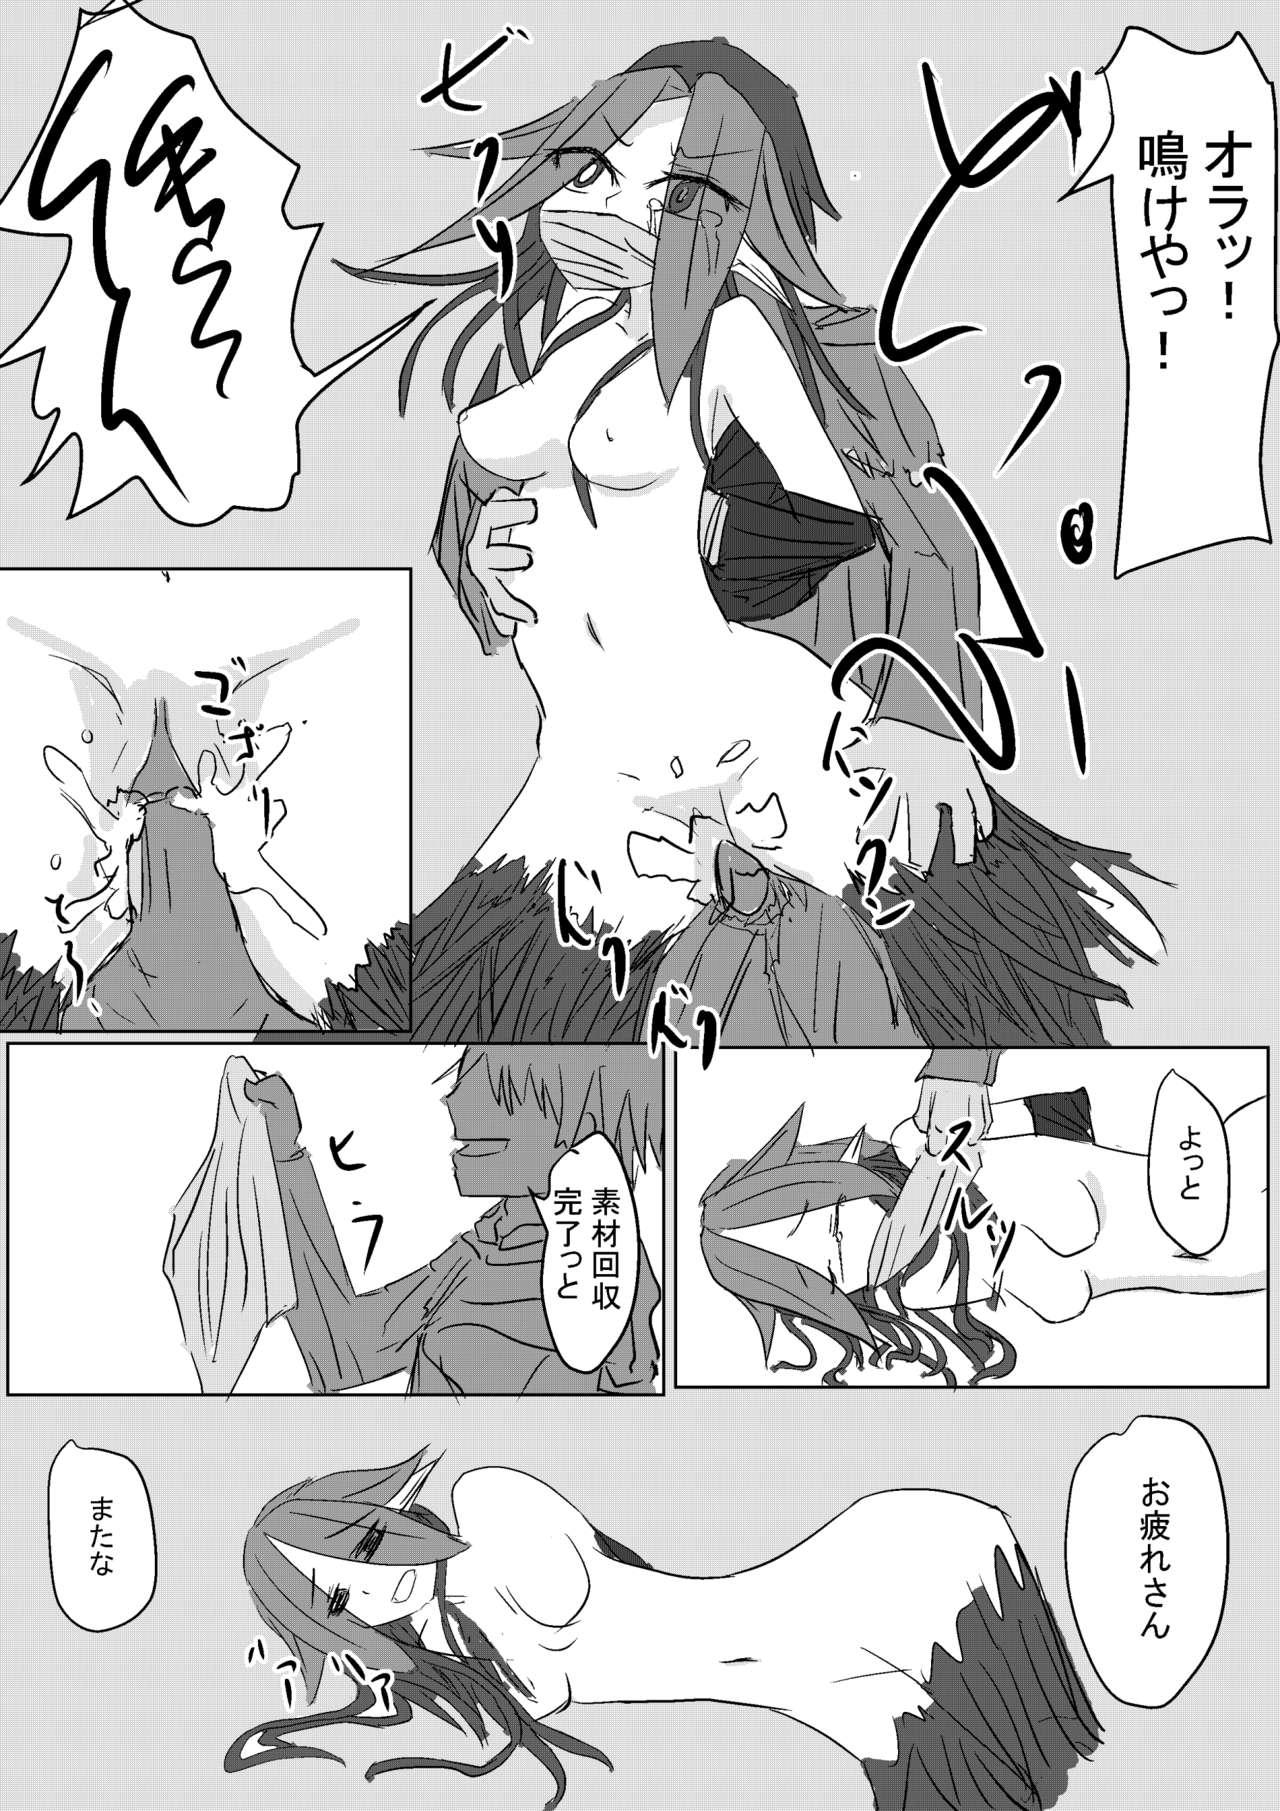 Maid Mandrake no Jueki Saishu - Original Furry - Page 7